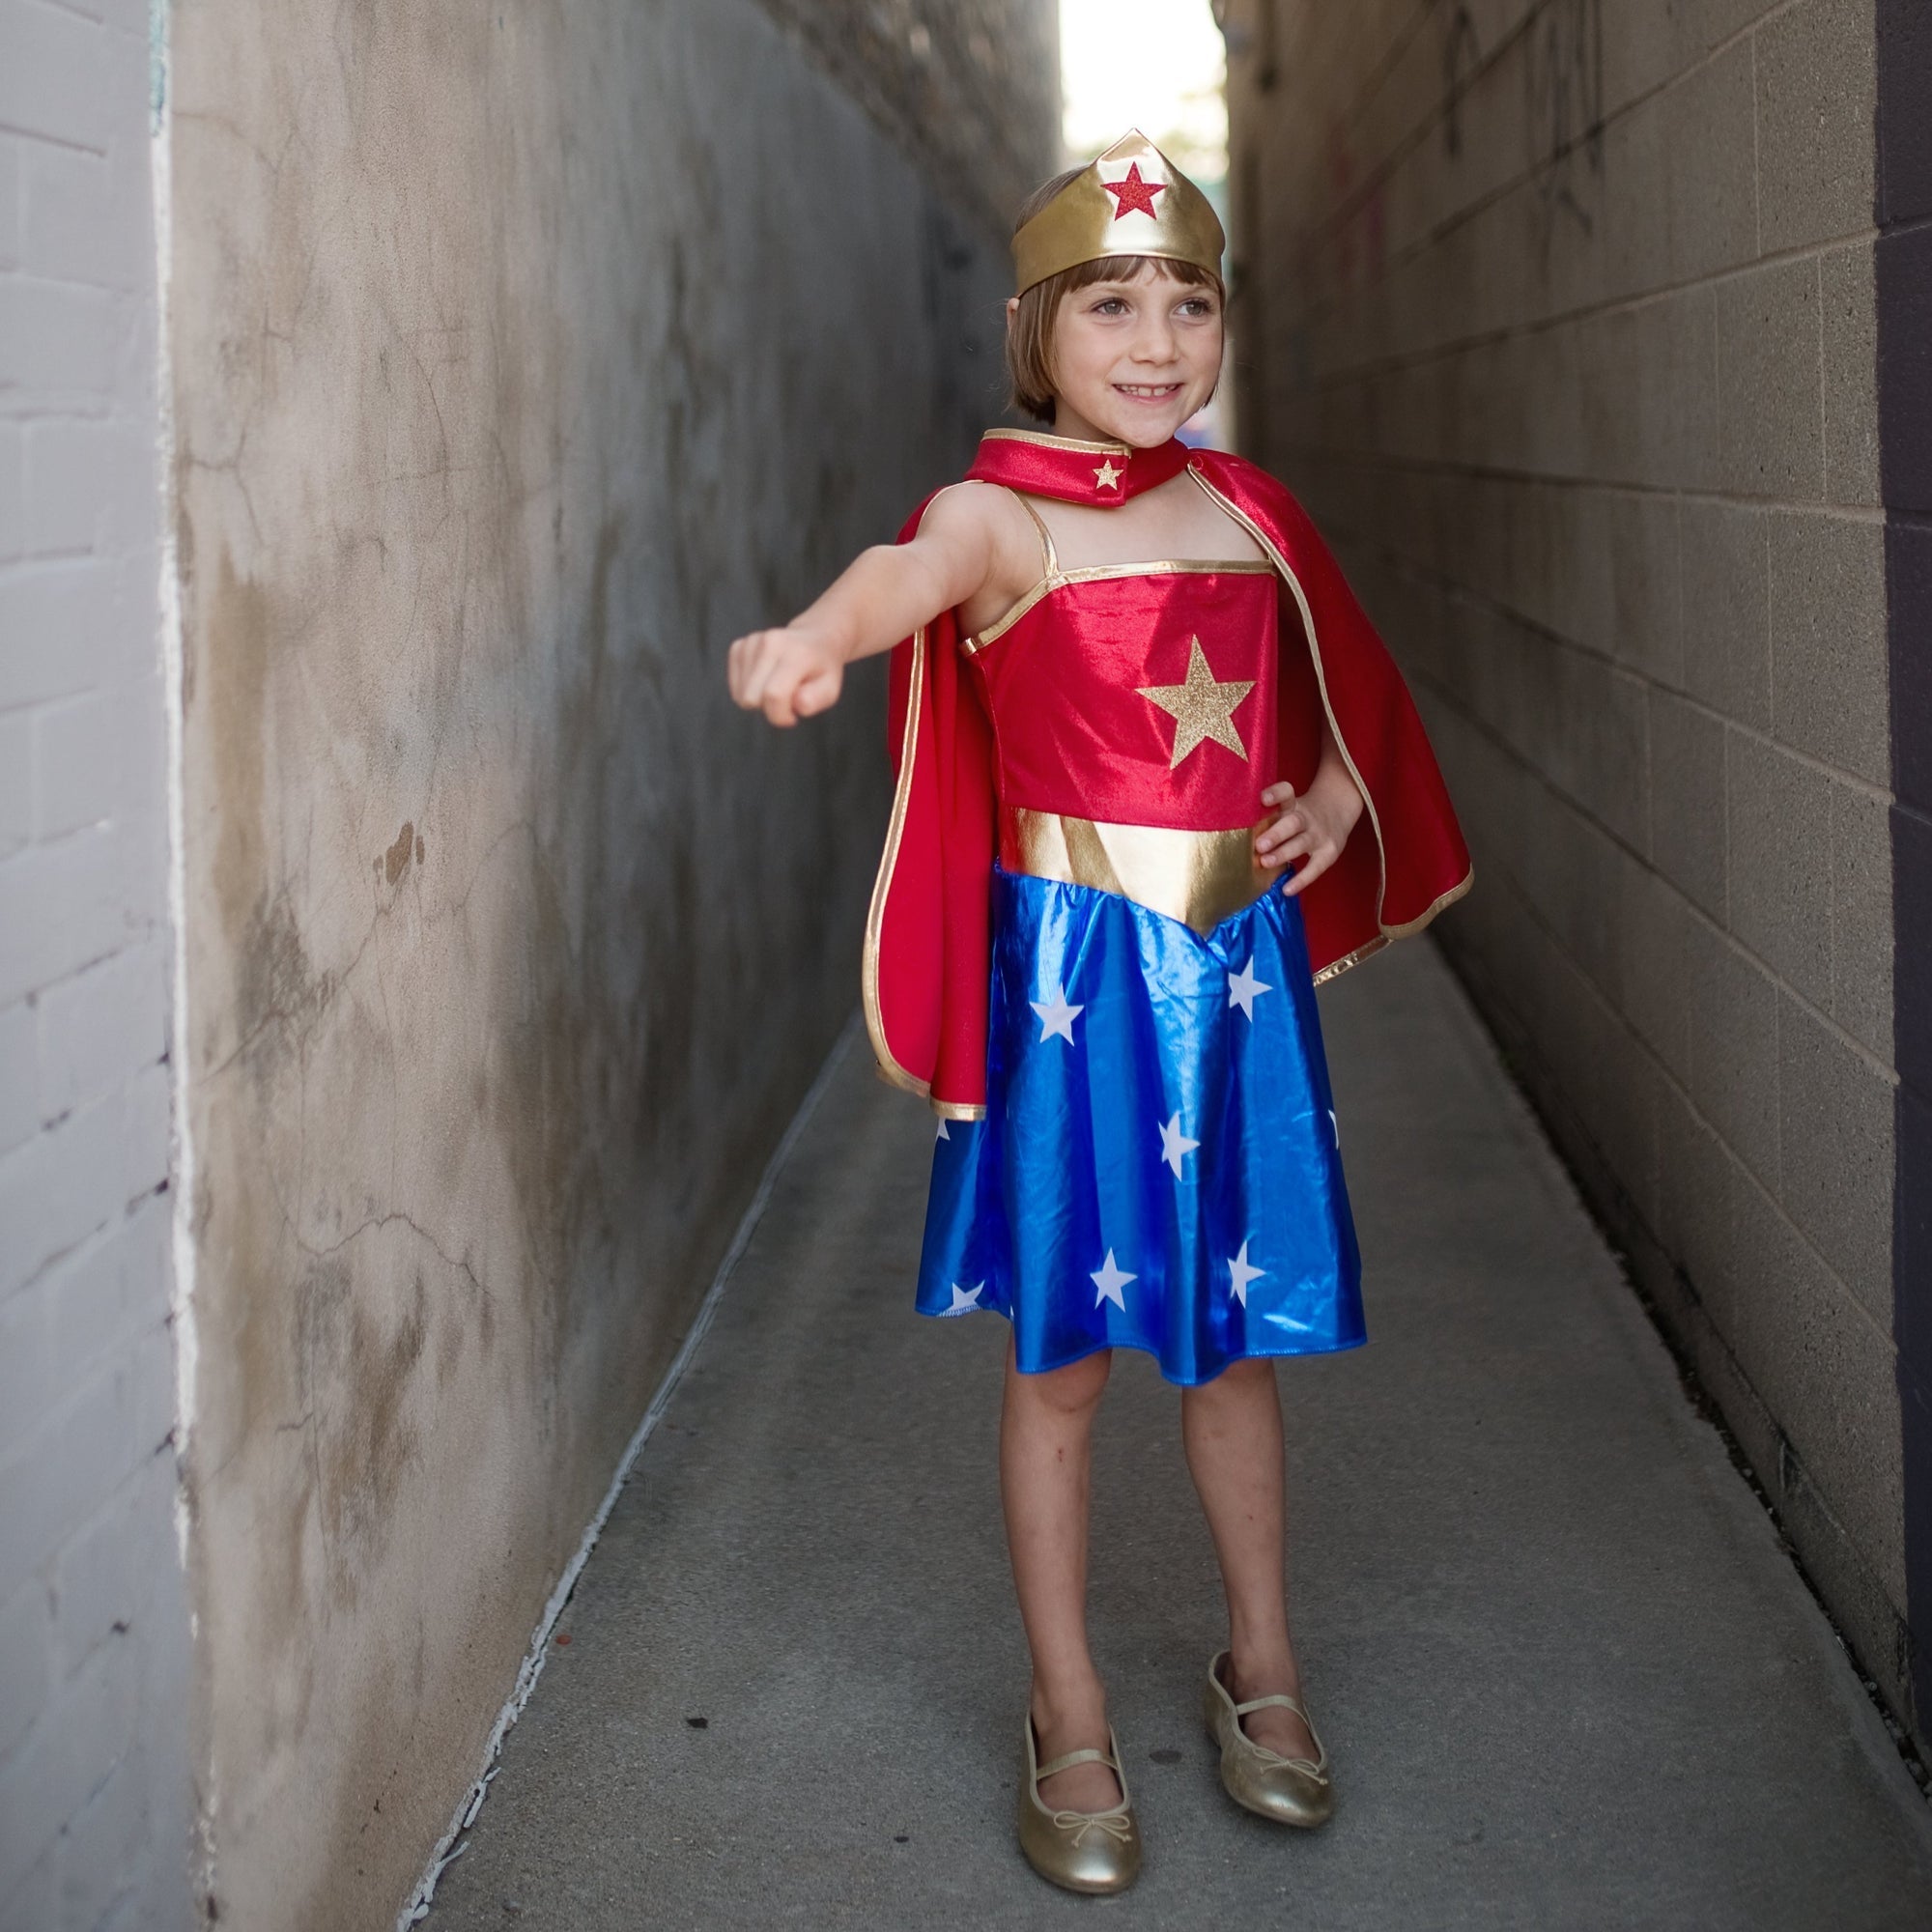 Costumi da Supereroe per bambini e bambine, divertenti, colorati e